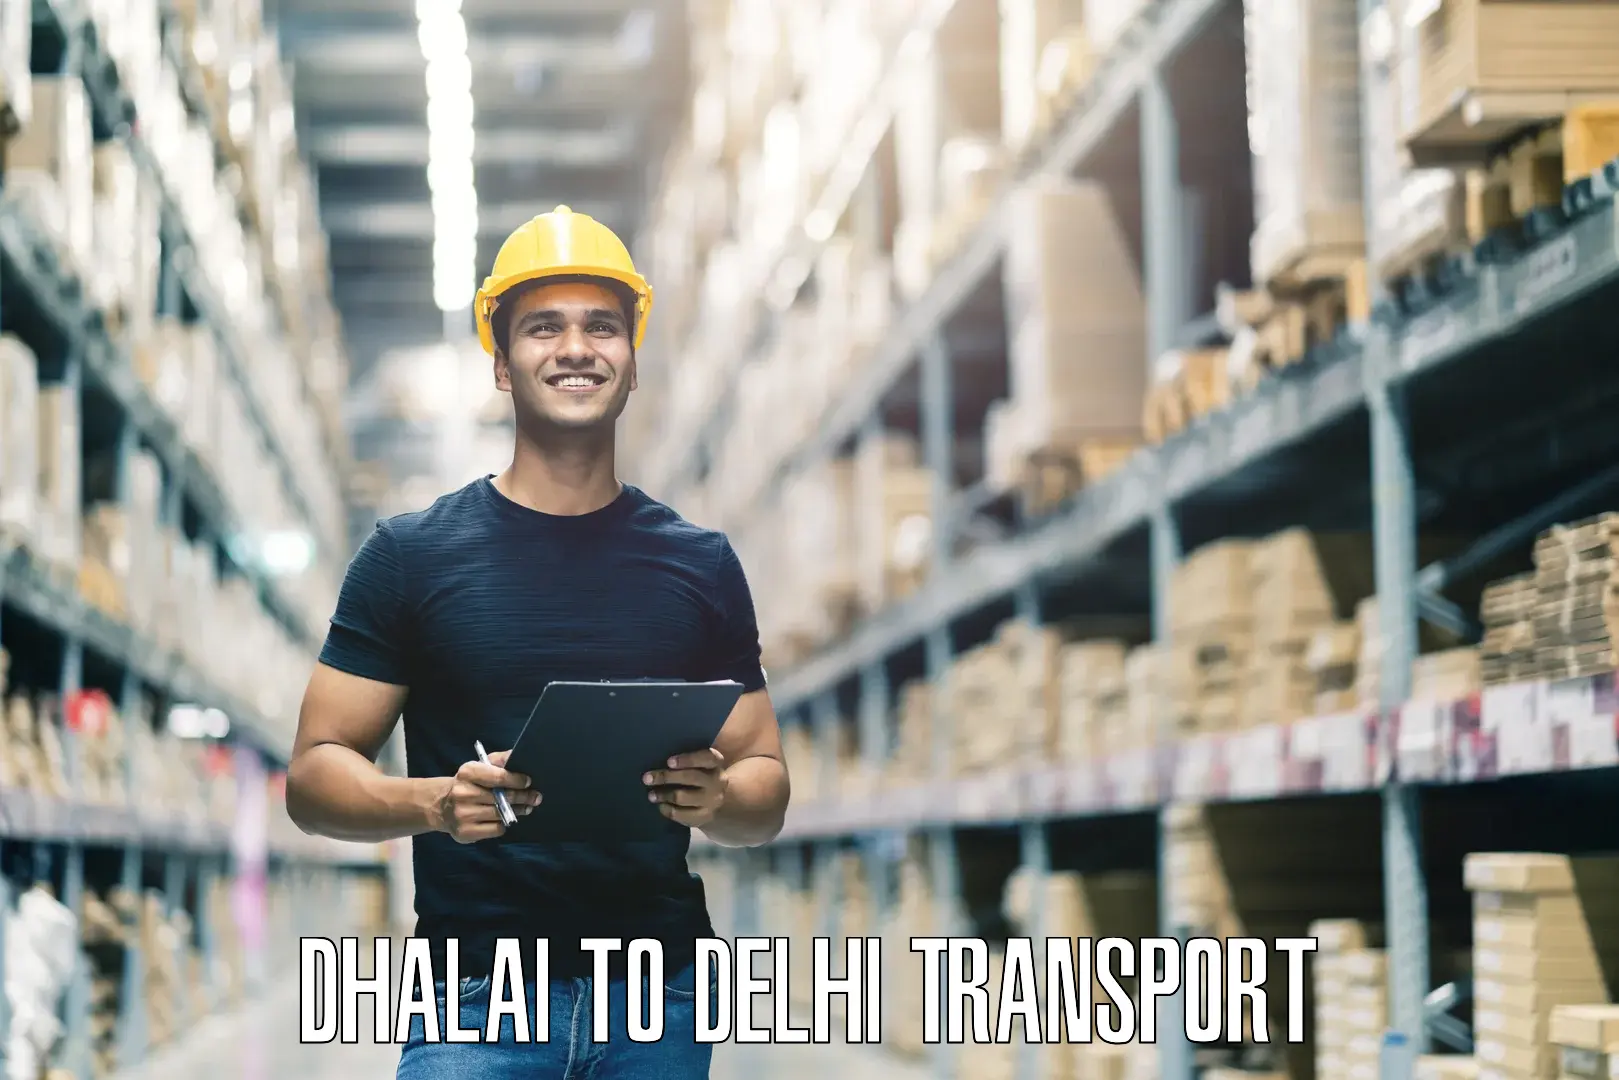 Online transport service Dhalai to Kalkaji